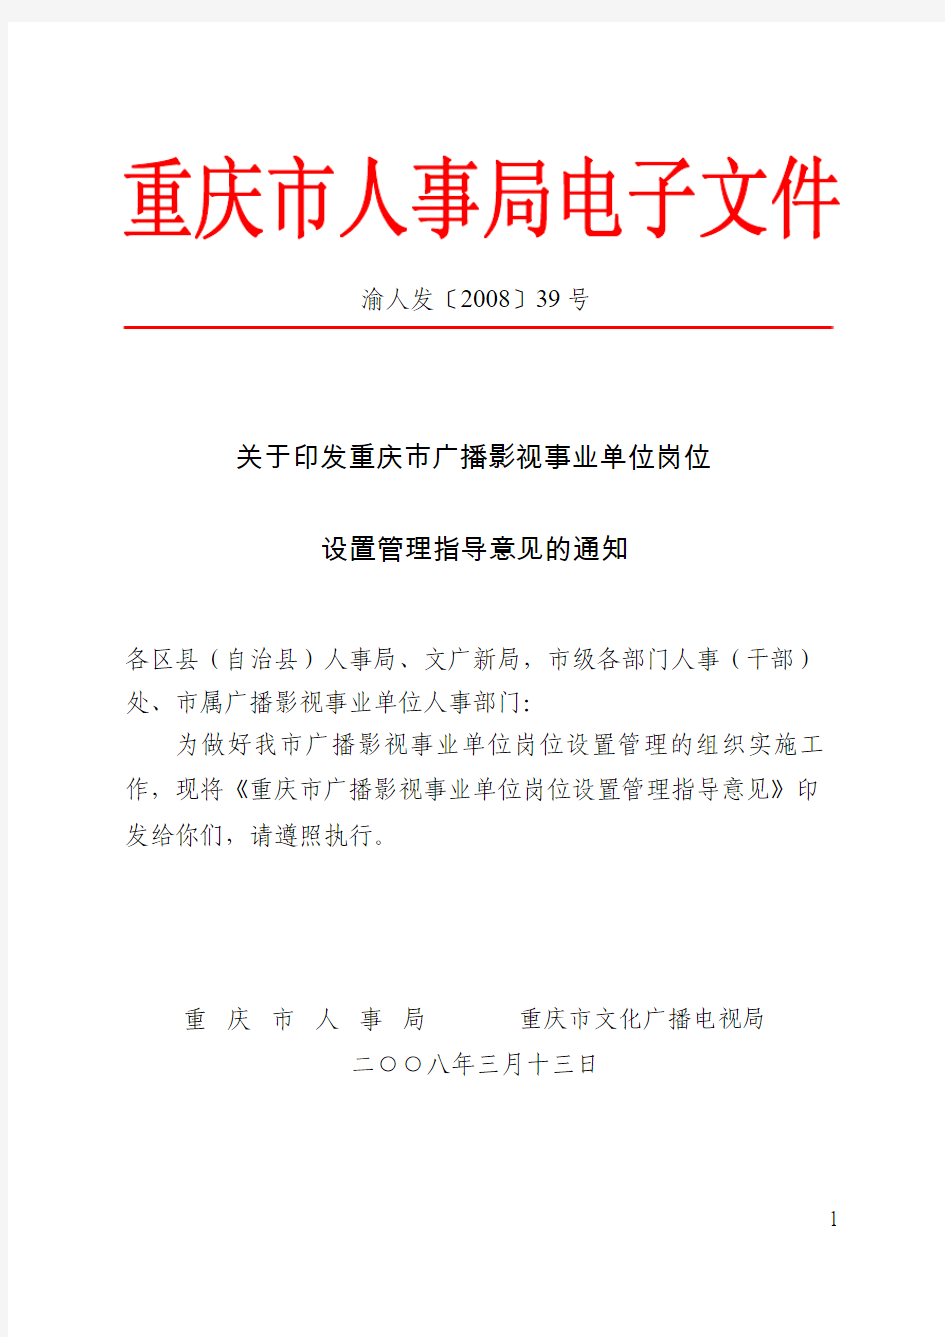 渝人发〔2008〕39号关于印发重庆市广播影视事业单位岗位设置管理指导意见的通知